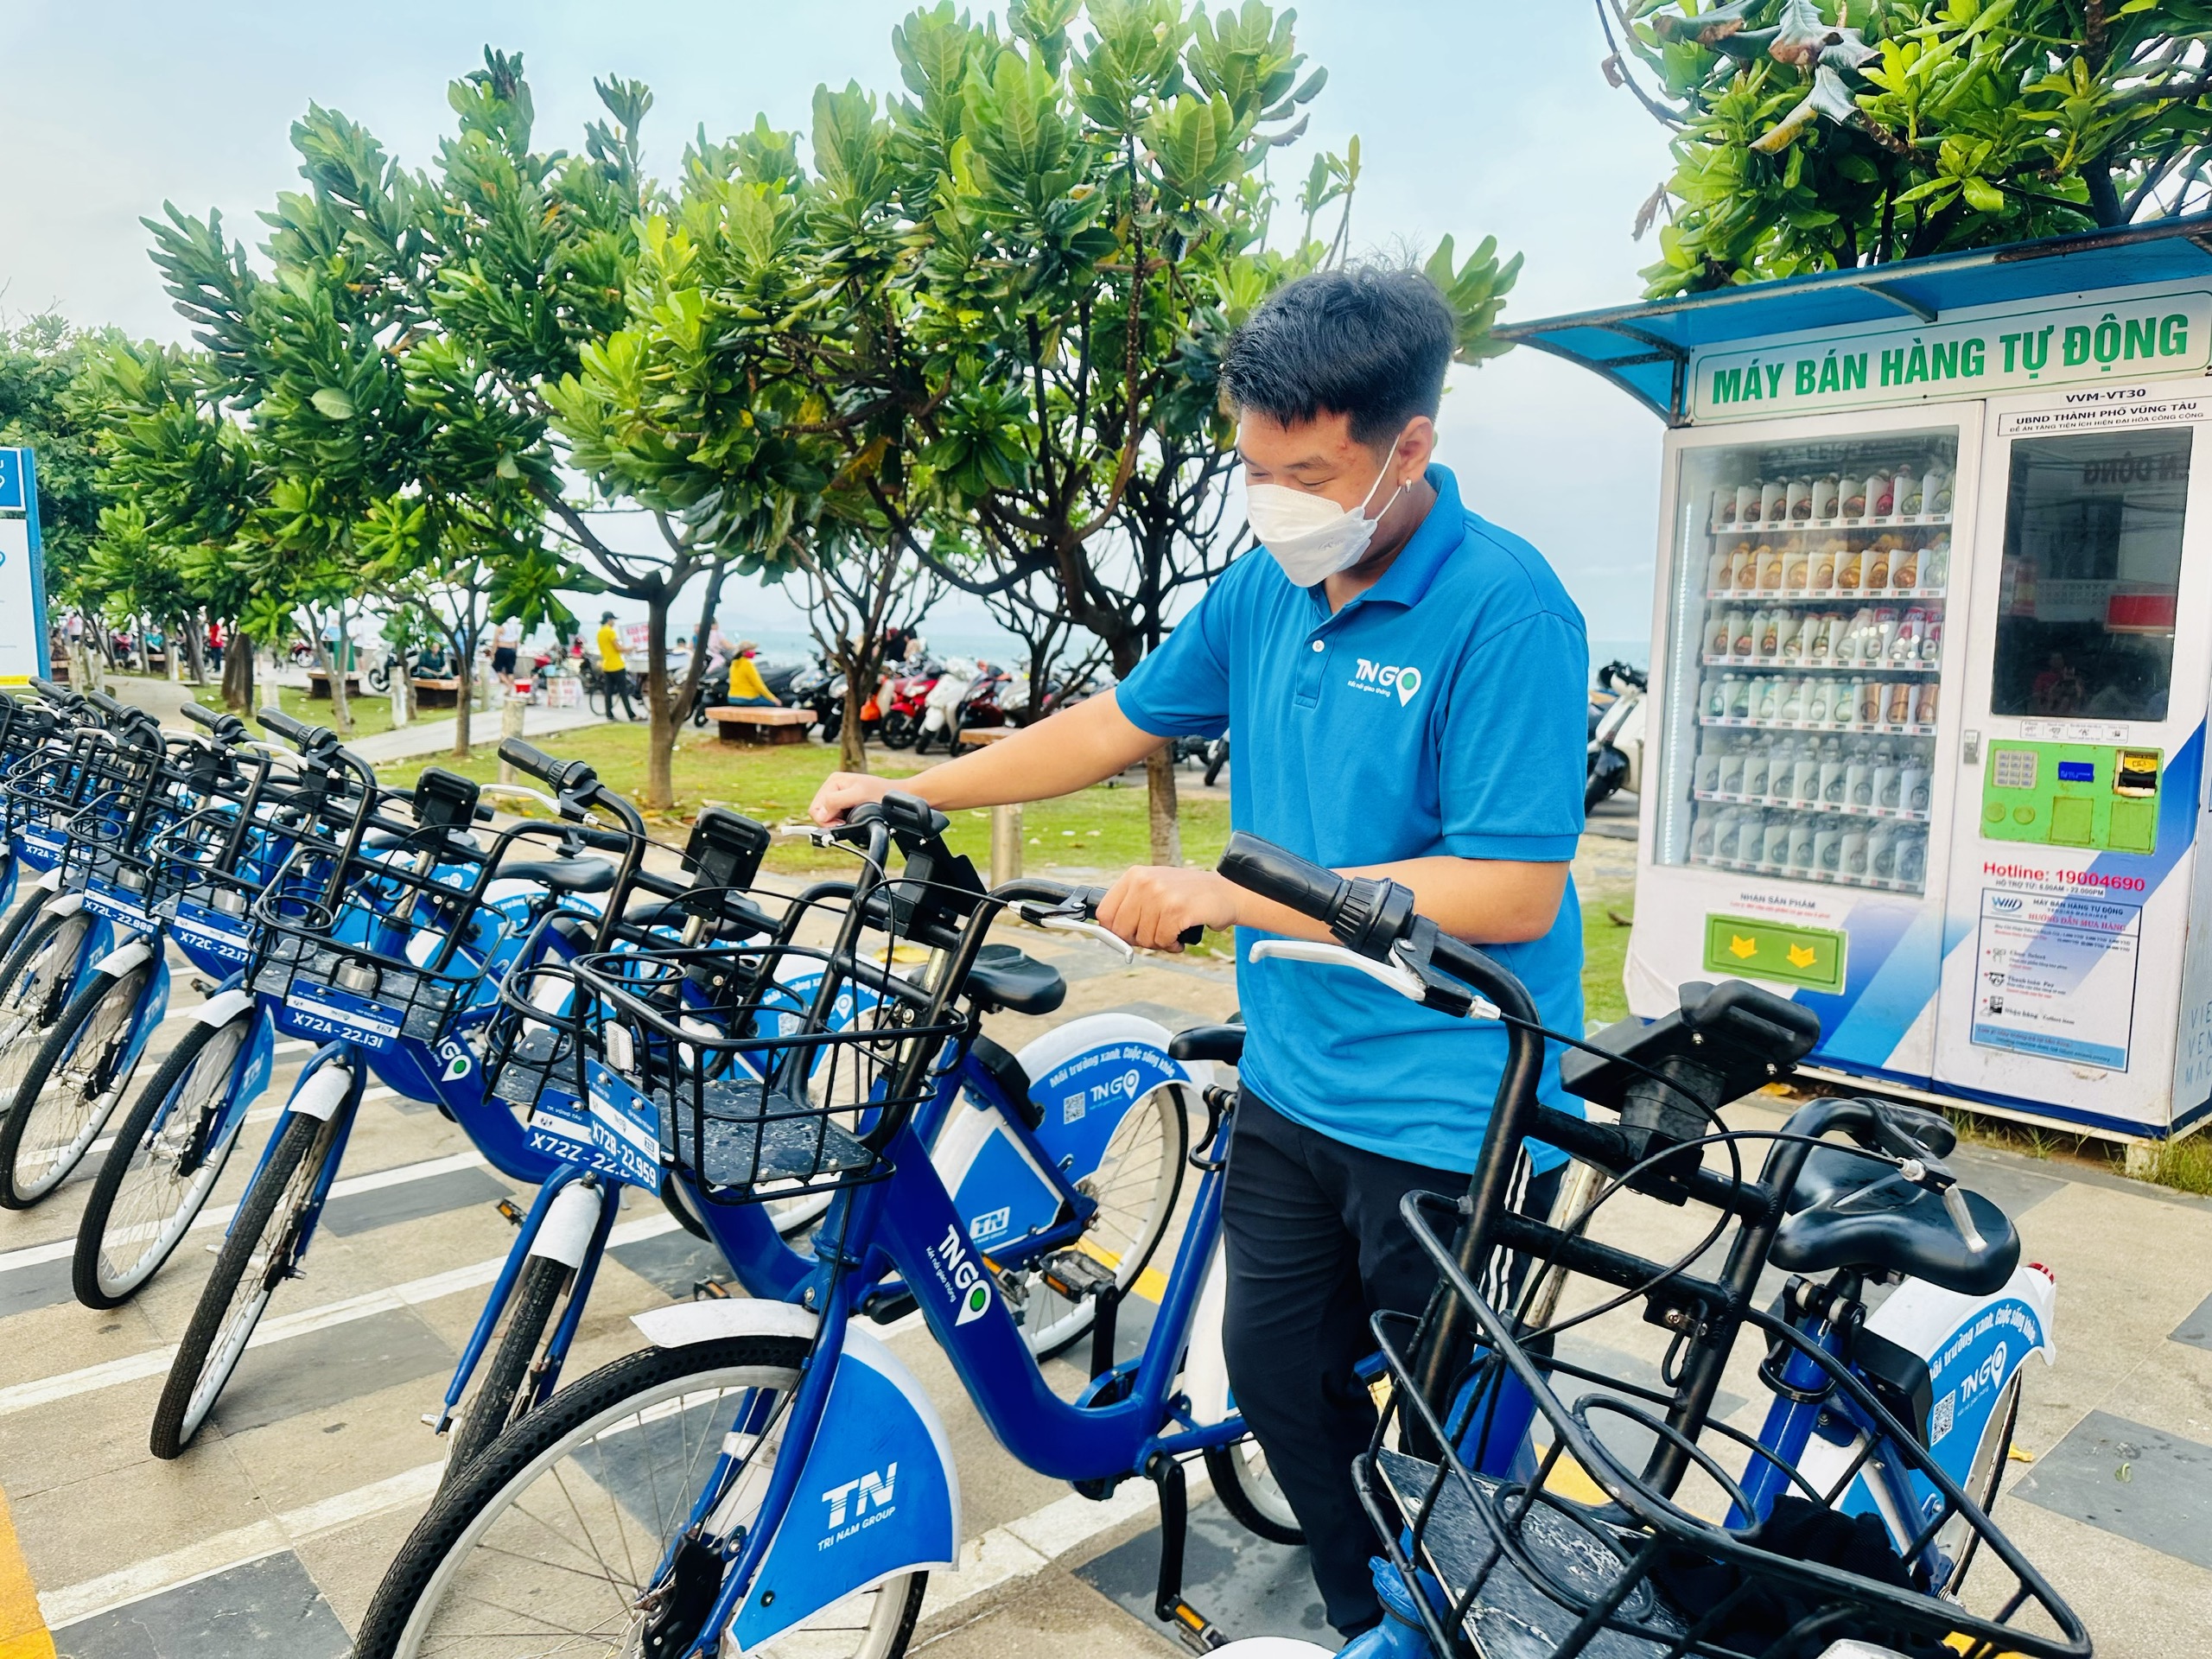 Hiện TP. Vũng Tàu có 41 trạm với hơn 500 xe đạp công cộng của TNGo để phục vụ người dân và khách du lịch